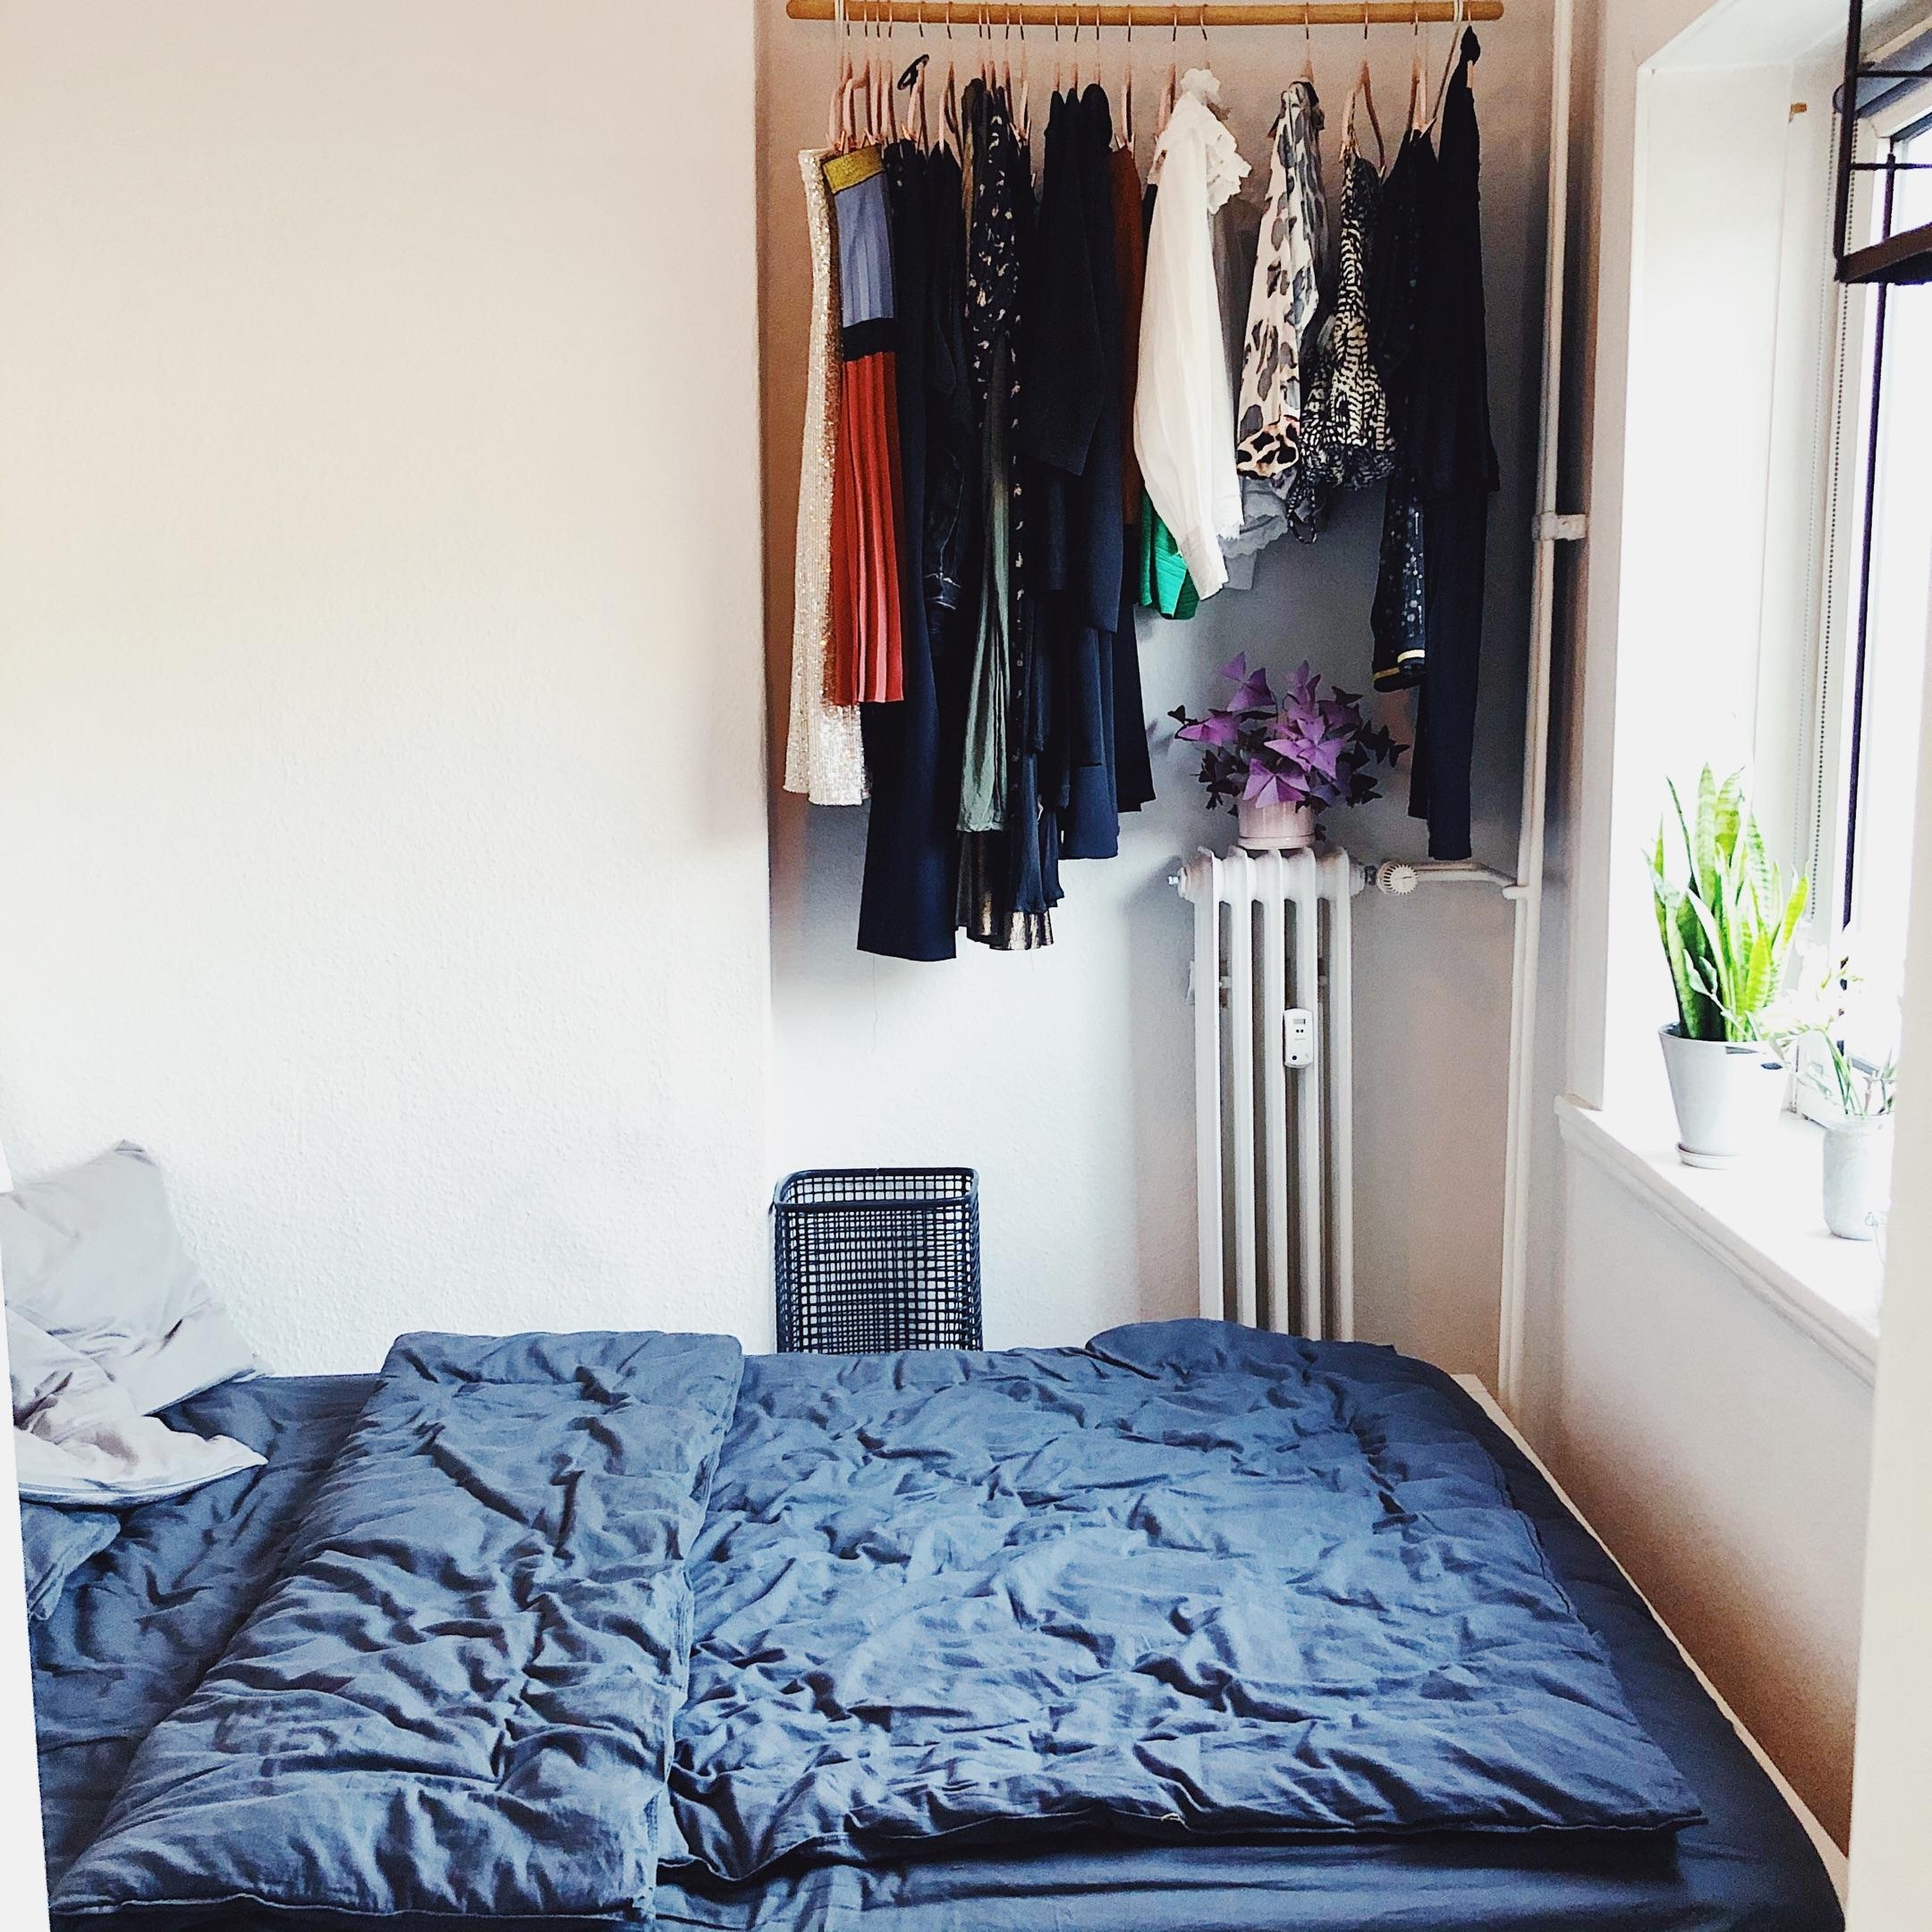 Mini-Wohnung + Ordnungswahn = jede Nische ausnutzen...! 
#Kleiderstange #tinyapartment #Schlafzimmer 